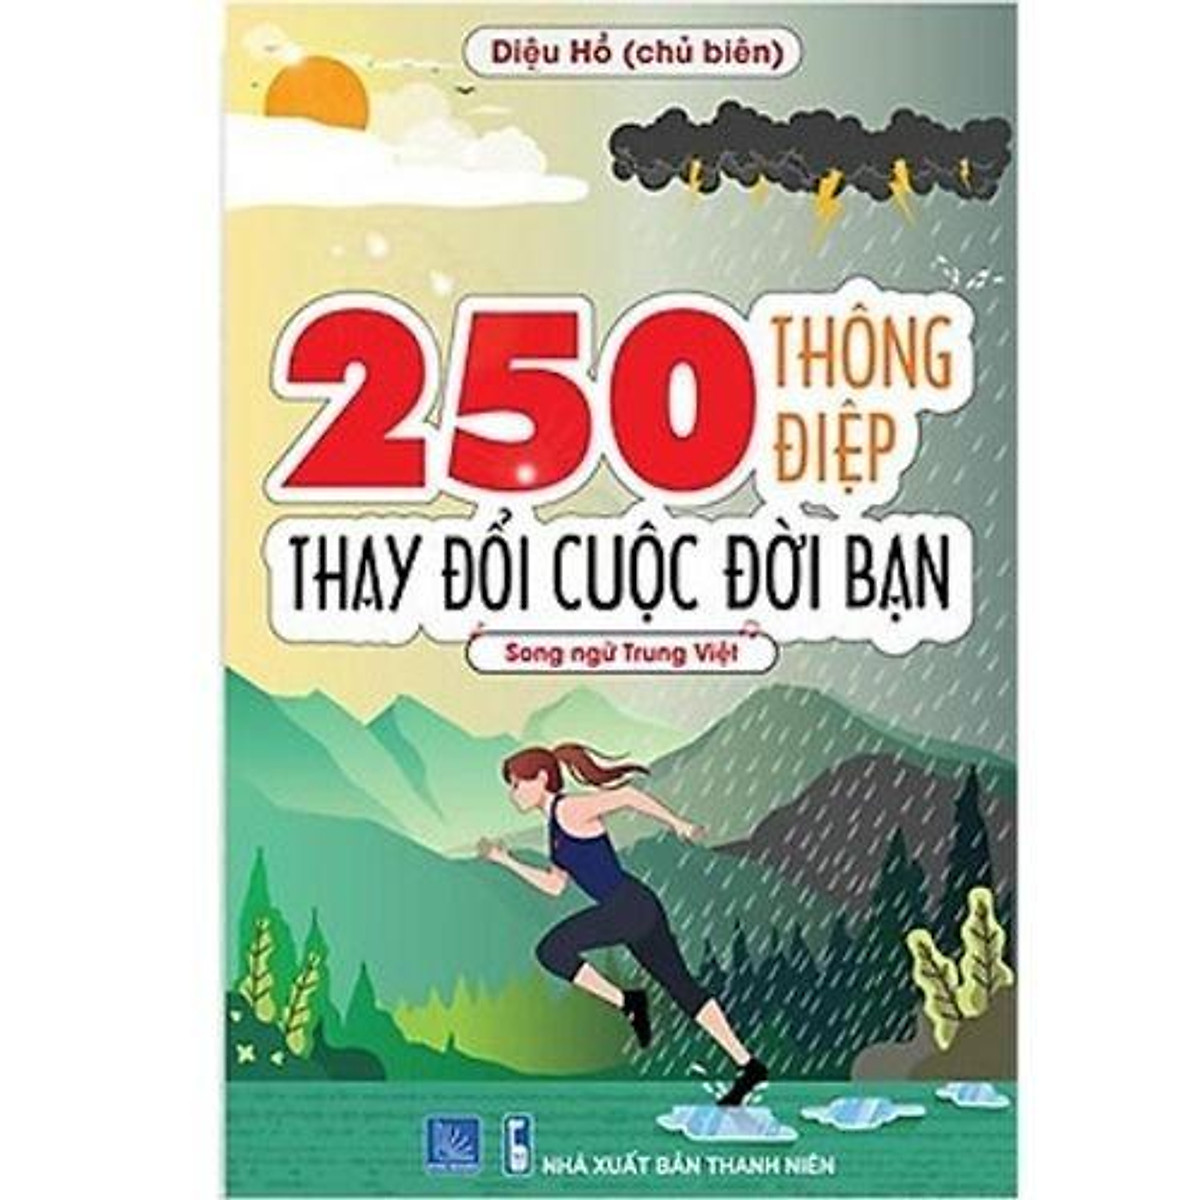 Sách - Combo: 250 Thông Điệp Thay Đổi Cuộc Đời Bạn (Song Ngữ Trung Việt) + Siêu trí nhớ chử Hán tập 3